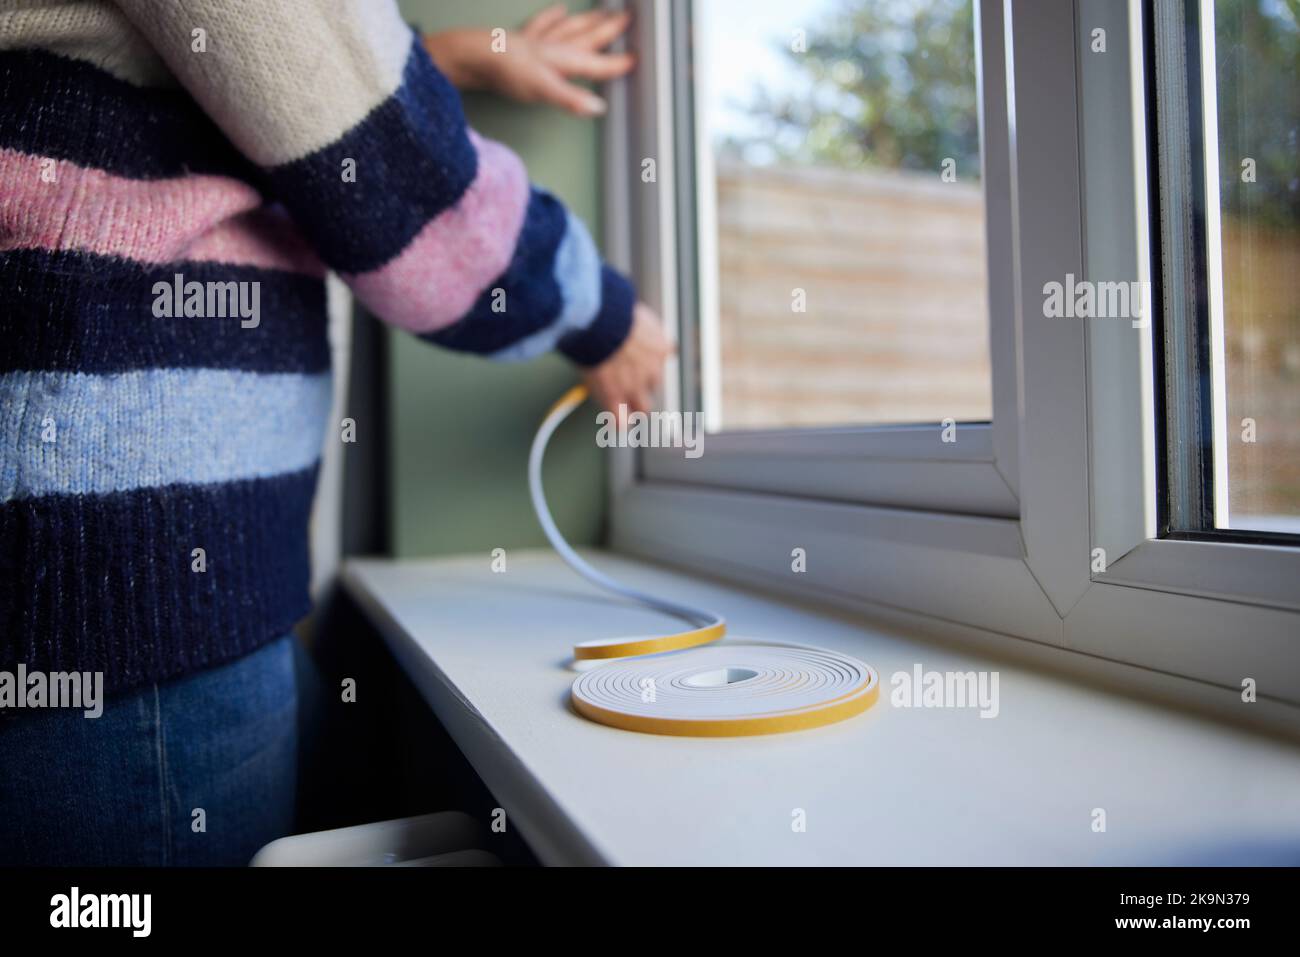 Mujer salvando enegy aislamiento Home Poniendo cinta de exclusión de draught en la ventana Foto de stock